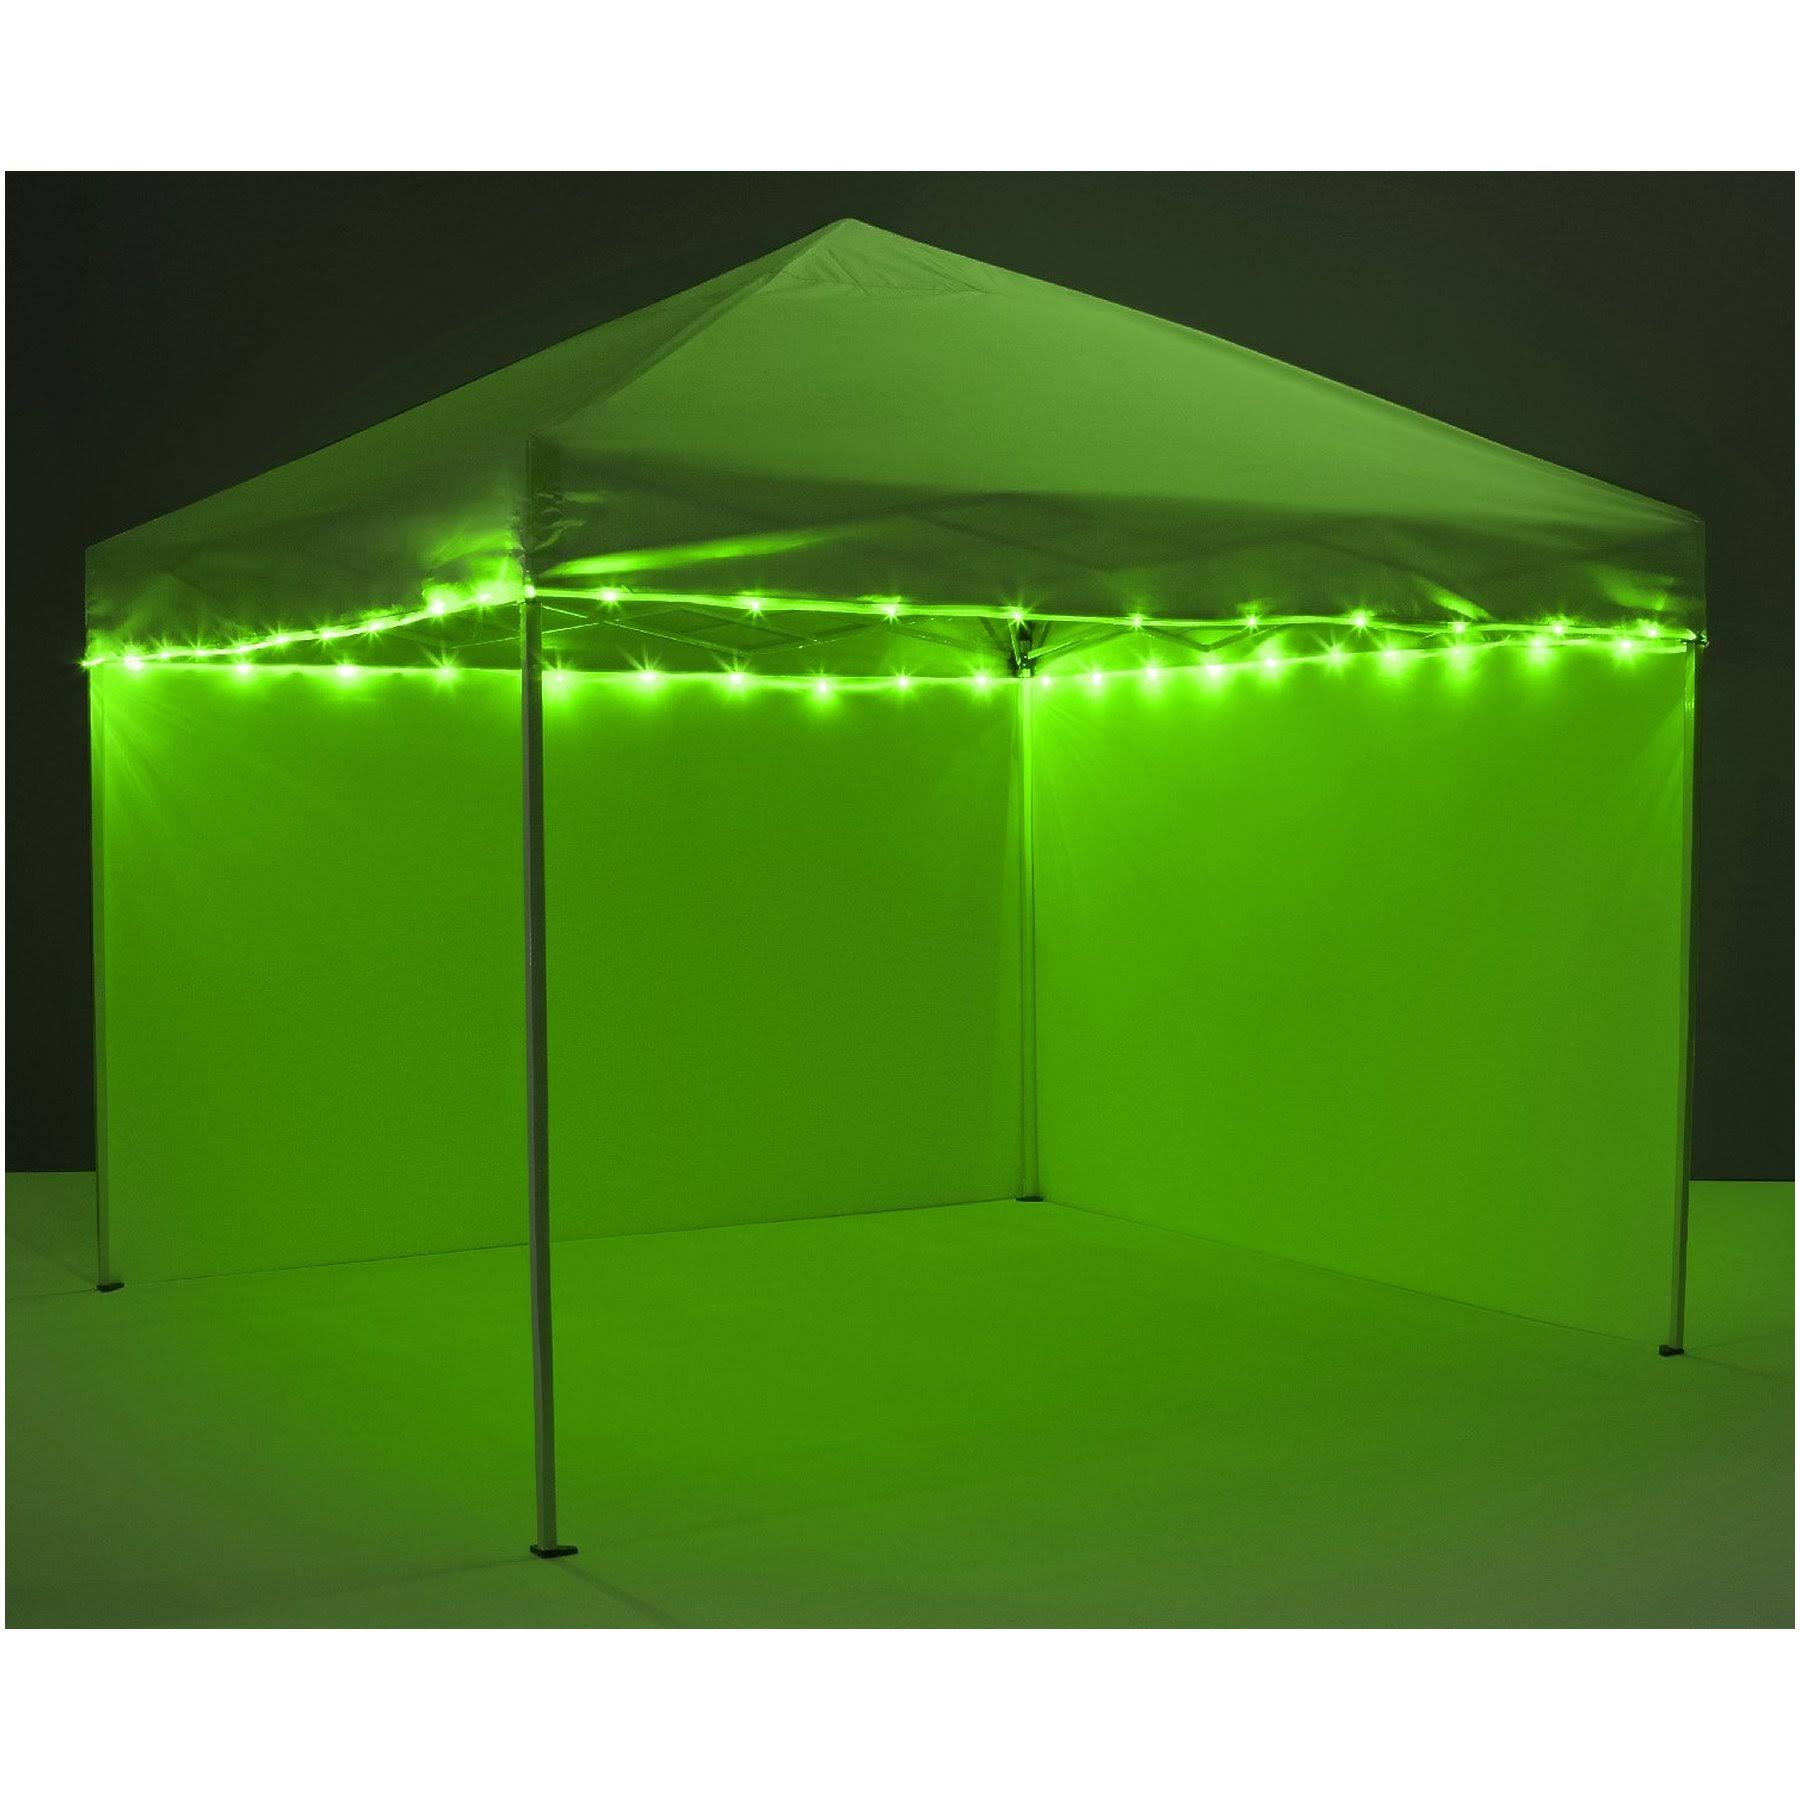 Brightz P7279 Canopy Brightz LED Tailgate Canopy & Patio Umbrella Accessory, Green